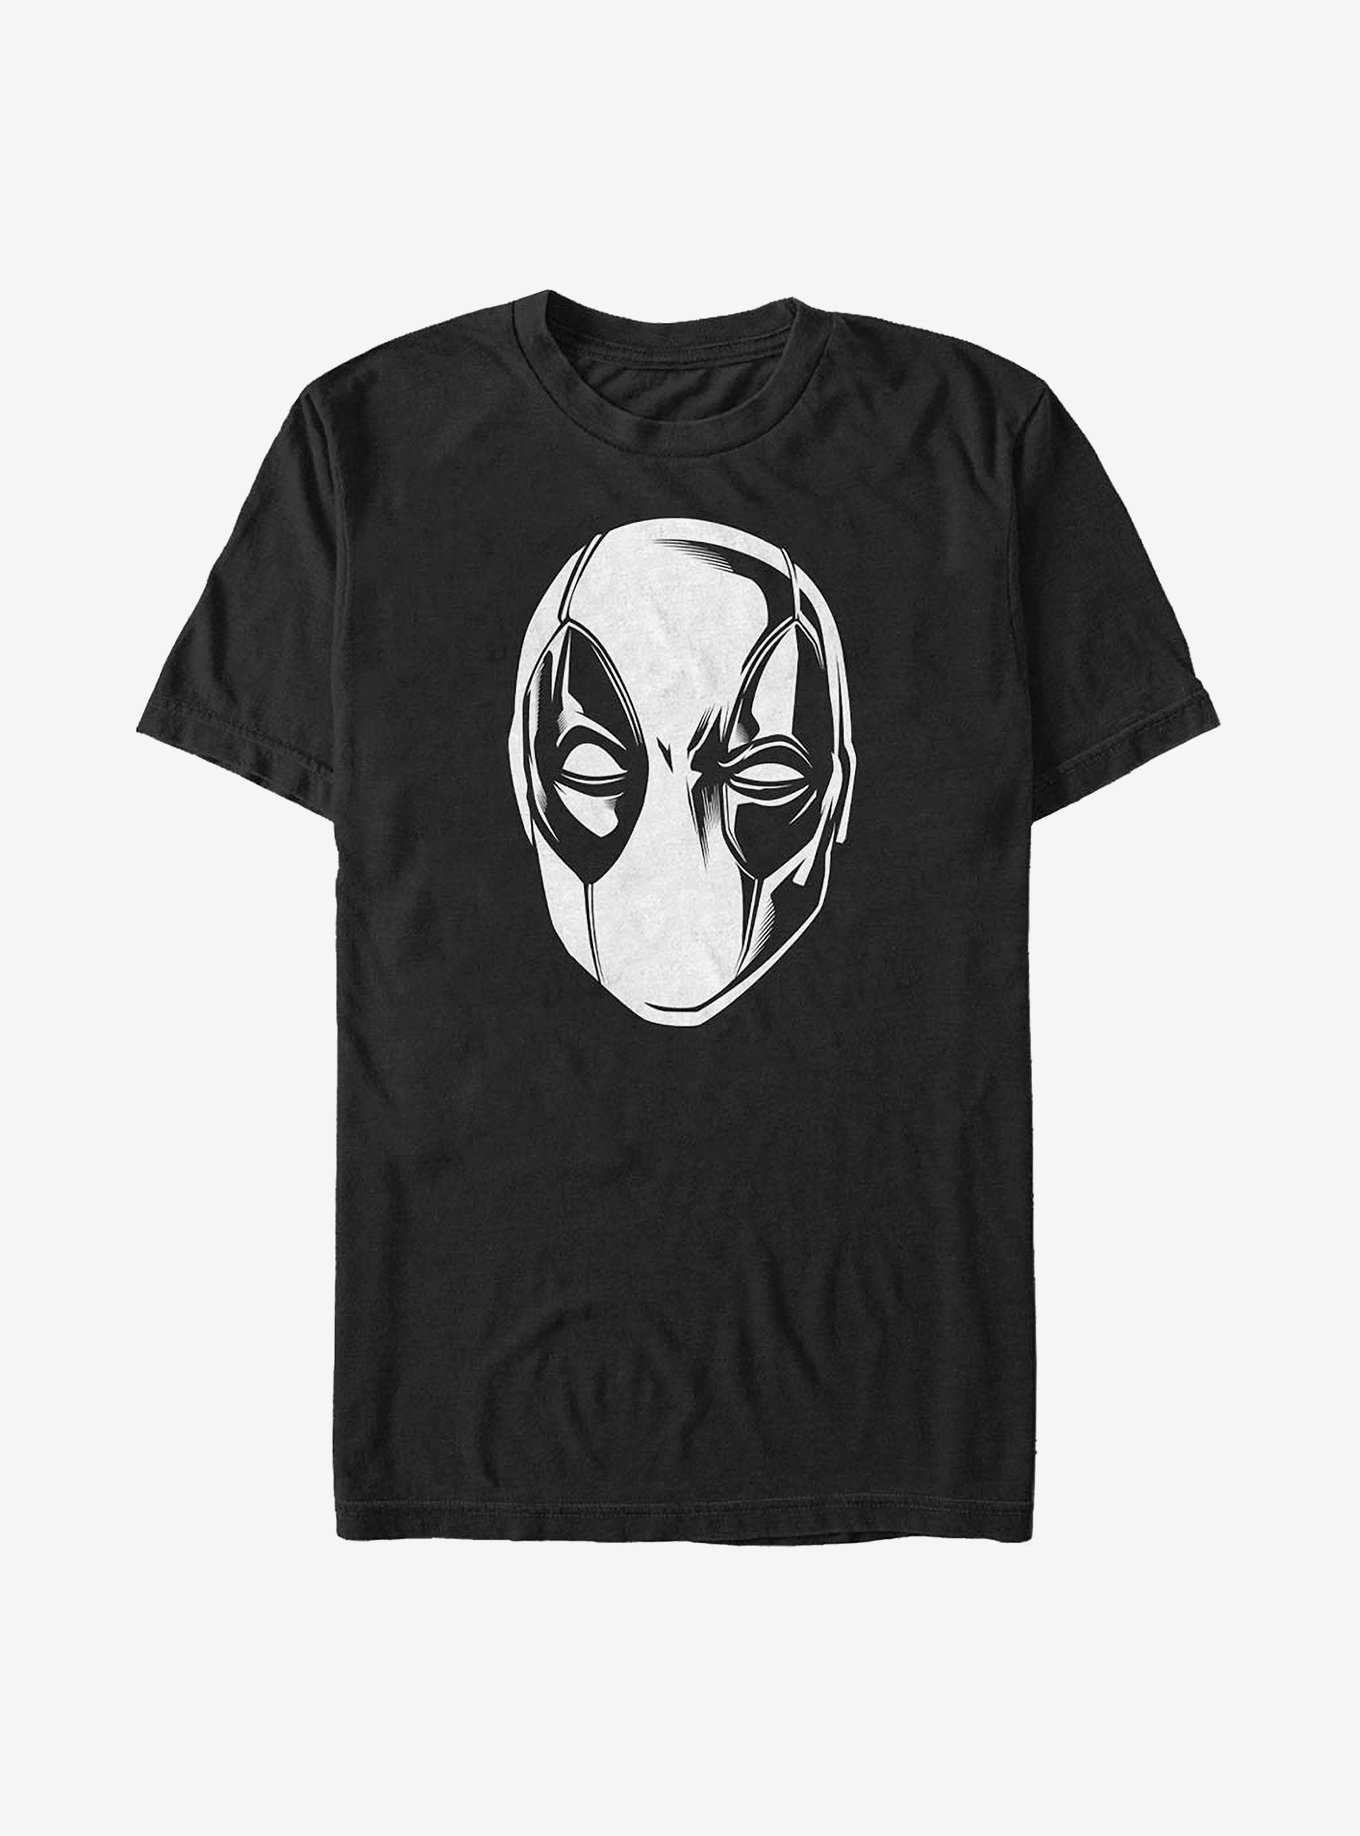 Marvel Deadpool White Silhouette T-Shirt, , hi-res